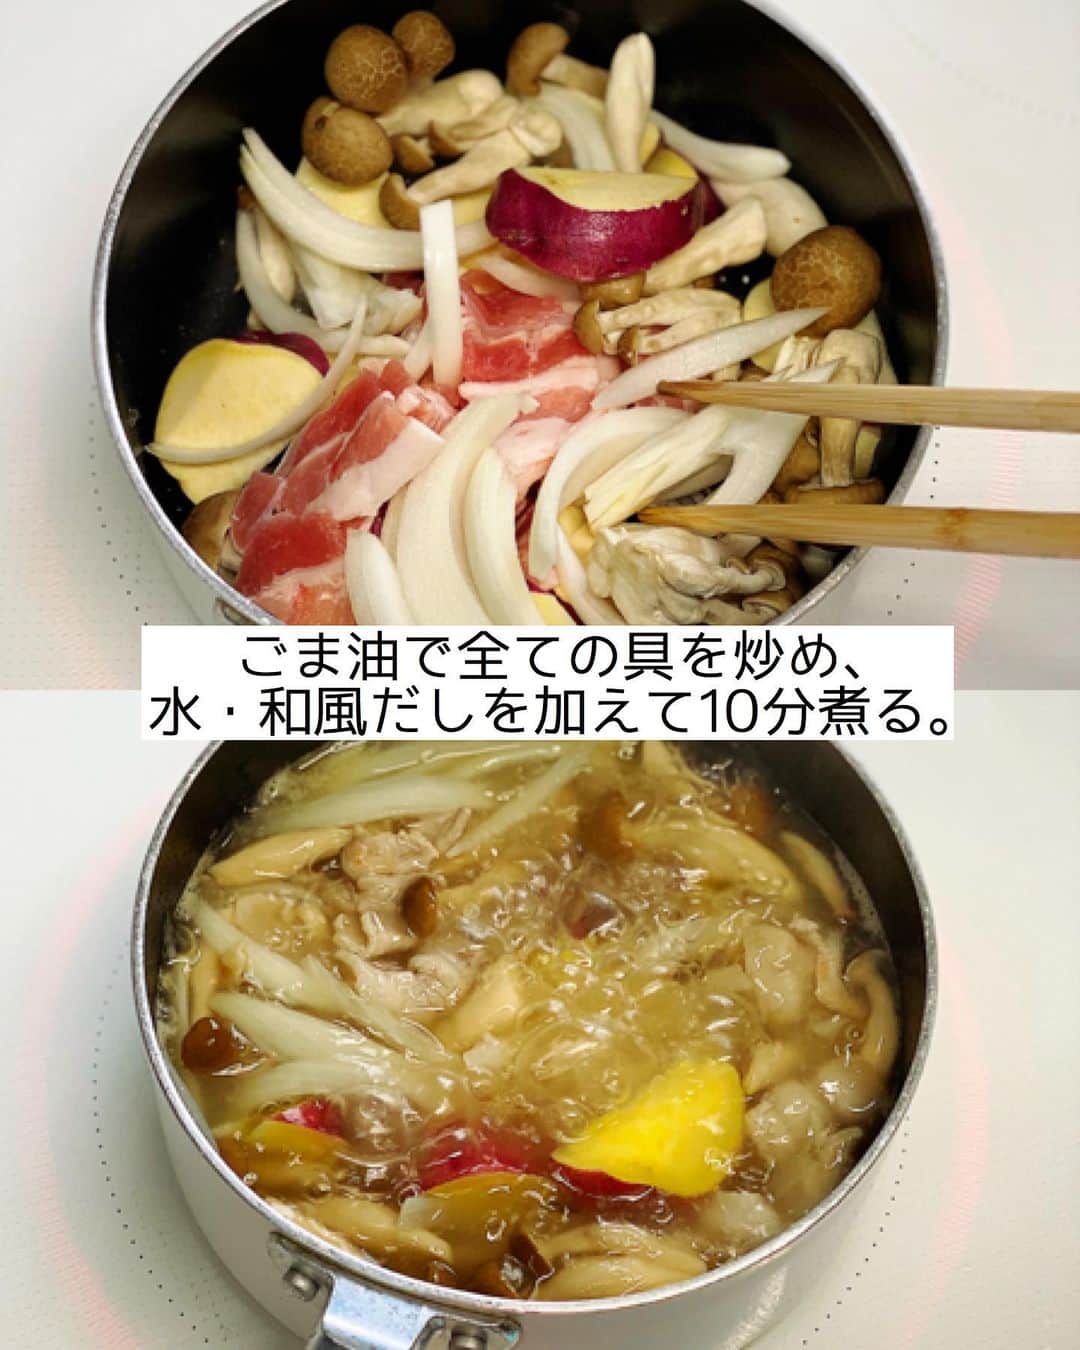 Mizuki【料理ブロガー・簡単レシピ】さんのインスタグラム写真 - (Mizuki【料理ブロガー・簡単レシピ】Instagram)「・﻿ 【#レシピ 】ーーーーー﻿ ♡さつまいもの豚汁♡﻿ ーーーーーーーーーーー﻿ ﻿ ﻿ ﻿ おはようございます(*^^*)﻿ ﻿ 今日ご紹介させていただくのは﻿ さつまいも入りの豚汁♡﻿ ほっこりと優しい甘さで﻿ 野菜がたっぷり食べられますよ♩﻿ しっかり食べ応えがあるので﻿ メインのボリュームが少ない時の﻿ 副菜メニューとしてもおすすめです♡﻿ ﻿ 作り方は超簡単(*´艸`)﻿ さっと炒めて10分煮るだけ！﻿ はじめにごま油で炒めることで﻿ コクと風味が格段にアップします♩﻿ ﻿ ﻿ ﻿ ＿＿＿＿＿＿＿＿＿＿＿＿＿＿＿＿＿＿＿＿﻿ 【2人分】﻿ 豚バラ薄切り肉...50g﻿ さつまいも...小1本(150g)﻿ 玉ねぎ...1/4個﻿ しめじ...1/3袋﻿ ごま油...小1﻿ ●水...400ml﻿ ●和風だし...小1/2﻿ 味噌...大1.5﻿ (好みで)万能ねぎ...適量﻿ ﻿ 1.豚肉は3cm幅に切る。さつまいもは一口大に切り、3分水に晒して水気を切る。玉ねぎは薄切りにする。しめじはほぐす。﻿ 2.鍋にごま油を中火で熱して1を炒める。豚肉の色が変わったら●を加えて10分煮る。﻿ 3.さつまいもが柔らかくなったら弱火にし、味噌を溶き入れる。器に盛り、小口切りにしたねぎをのせる。﻿ ￣￣￣￣￣￣￣￣￣￣￣￣￣￣￣￣￣￣￣￣﻿ ﻿ ﻿ ﻿ 《ポイント》﻿ ♦︎アクが出たら除いて下さい♩﻿ ♦︎野菜はお好みでアレンジして下さいね♩﻿ ﻿ ﻿ ﻿ ﻿ ﻿ ﻿ 🔖献立本をご予約下さった方へ🔖﻿ ￣￣￣￣￣￣￣￣￣￣￣￣￣￣￣￣﻿ いつも本当にありがとうございます🙇‍♀️﻿ この本の発売日は9月24日ですが﻿ 連休の関係で早めに出荷され﻿ 発売日より前のお届けとなるところもございます💕﻿ (普通逆ですよね😂)﻿ ↓﻿ ↓﻿ _____________________________________﻿ 💓新刊予約開始しました💓﻿ Amazon予約キャンペーン実施中🎁﻿ ￣￣￣￣￣￣￣￣￣￣￣￣￣￣￣￣￣﻿ \15分でいただきます/﻿ #Mizukiの2品献立﻿ (9月24日発売・マガジンハウス)﻿ ﻿ 忙しい私たちには﻿ 2品くらいがちょうどいい！﻿ 『しんどくない献立、考えました』﻿ ￣￣￣￣￣￣￣￣￣￣￣￣￣￣￣￣﻿ ﻿ ーーーーーPART.1 ーーーーー﻿ 【Mizukiのお墨つき！２品献立ベスト10】﻿ 約15分でできる10献立をご紹介！﻿ メインは全部フライパン、副菜はレンチンor混ぜるだけ♡﻿ ﻿ ーーーーーPART.2 ーーーーー﻿ 【フライパンひとつ！今夜のメインおかず】﻿ 献立の主役になる肉や魚のおかず50品！﻿ Part3の副菜と組み合わせれば﻿ 献立のバリエーションが広がりますよ♩﻿ ﻿ ーーーーー PART.3 ーーーーー﻿ 【合間に作れる！ 野菜別かんたん副菜】﻿ レンチンor和えるだけの副菜レシピを﻿ 素材別にたっぷり収録♩﻿ ﻿ ーーーーー番外編ーーーーー﻿ 【ひとつで満足！ご飯＆麺】﻿ 【具だくさん！おかずスープ】﻿ 【オーブンいらずのおやつレシピ】﻿ ￣￣￣￣￣￣￣￣￣￣￣￣￣￣￣￣￣￣﻿ ﻿ ﻿ ﻿ Amazon予約プレゼントキャンペーン﻿ 🎁🎁🎁🎁🎁🎁🎁🎁🎁🎁🎁🎁﻿ ﻿ 皆様に感謝の気持ちを込めて﻿ ご用意させていただきました✨﻿ ﻿ ＿＿＿＿＿＿＿＿＿＿＿＿＿＿＿＿＿﻿ 新刊【2品献立】をAmazonで予約し﻿ インスタにアップして下さった方に﻿ 抽選で［フライパン］or［ボールセット］を﻿ プレゼントさせていただきます♩﻿ ￣￣￣￣￣￣￣￣￣￣￣￣￣￣￣￣￣﻿ ﻿ ✅【インスタ応募方法▼】﻿ ①本の表紙の画像を1枚目に、﻿ Amazonで予約したことがわかる画像を﻿ 2枚目に貼り付け(どちらもスクショでOK)﻿ ［#Mizukiの2品献立 ］のハッシュタグを付けて投稿！﻿ 以上で応募完了です(*^^*)﻿ ﻿ ￣￣￣￣￣￣￣￣￣￣￣￣￣￣￣￣￣￣﻿ ハイライトにリンク🔗あります💓﻿ ﻿ ﻿ ﻿ ﻿ ﻿ ﻿ ￣￣￣￣￣￣￣￣￣￣￣￣￣￣￣￣￣￣﻿ レシピを作って下さった際や﻿ レシピ本についてのご投稿には﻿ タグ付け( @mizuki_31cafe )して﻿ お知らせいただけると嬉しいです😊💕﻿ ﻿ ﻿ ﻿ ﻿ ﻿ #さつまいも#豚汁#汁物#Mizuki#簡単レシピ#時短レシピ#節約レシピ#料理#フーディーテーブル#マカロニメイト#おうちごはん#デリスタグラマー#料理好きな人と繋がりたい#食べ物#料理記録#おうちごはんlover#写真好きな人と繋がりたい#foodpic#cooking#recipe#lin_stagrammer#foodporn#yummy#f52grams#さつまいもの豚汁m」9月21日 6時58分 - mizuki_31cafe